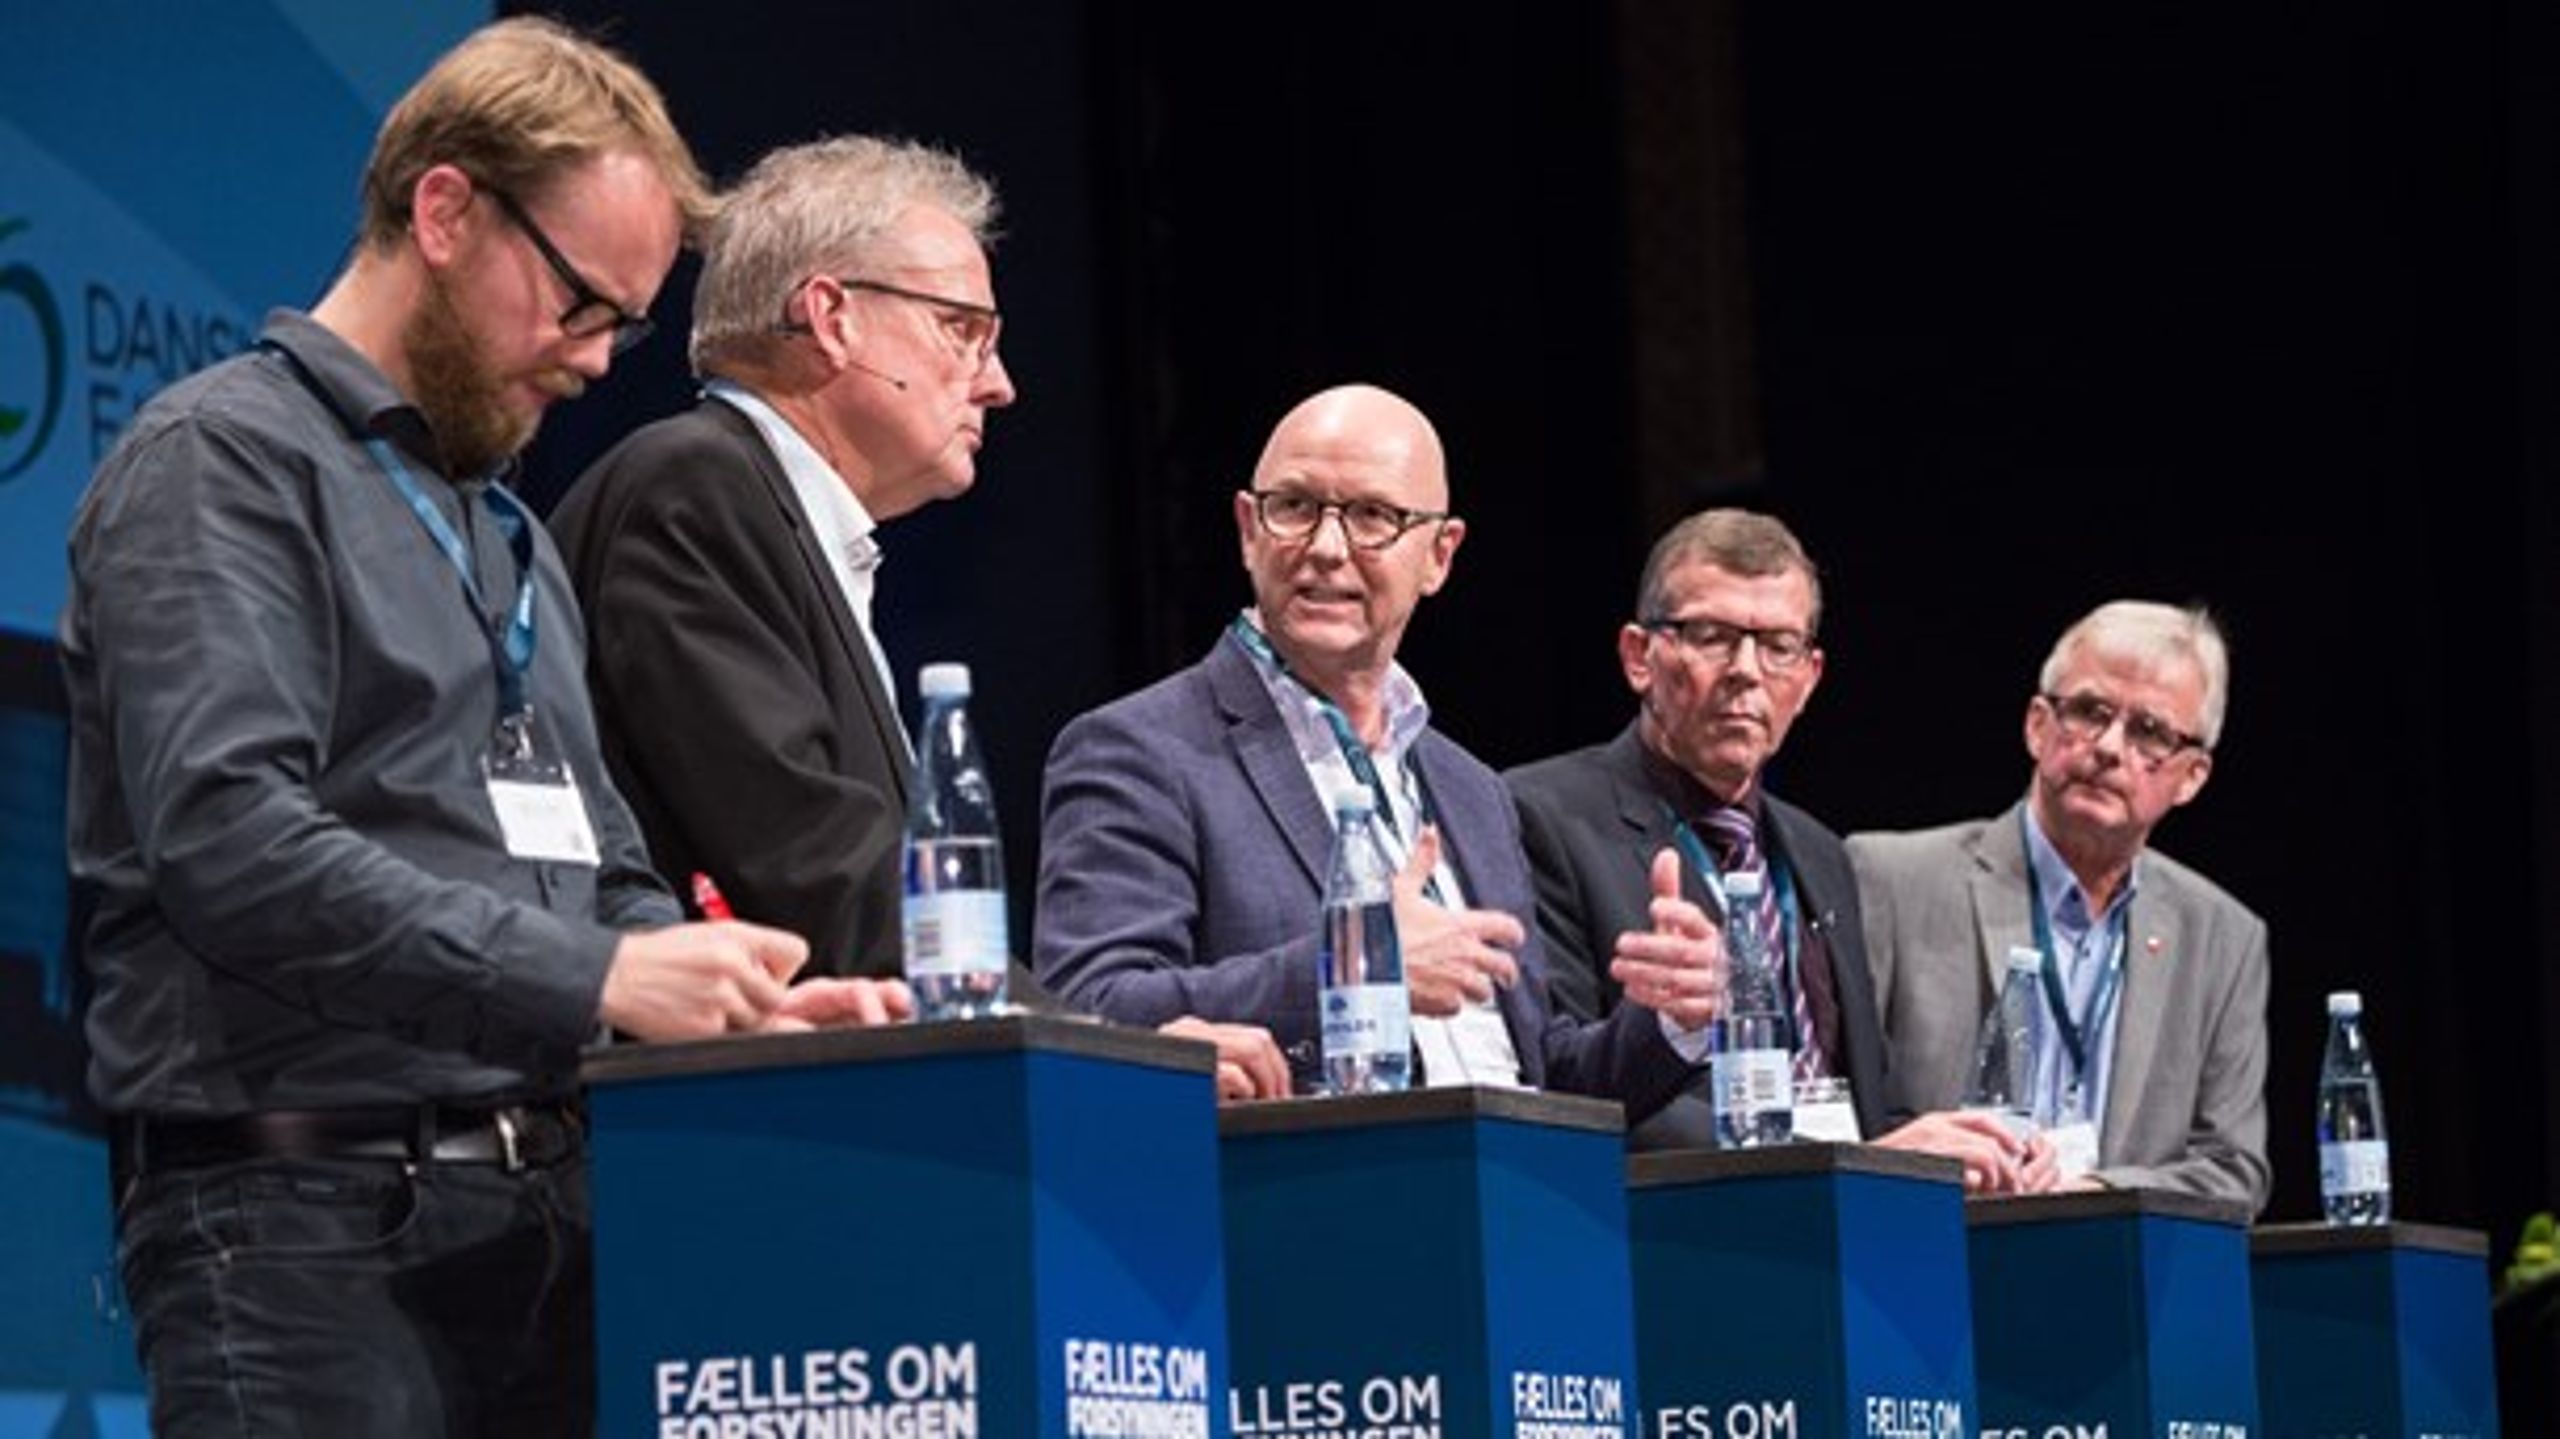 Fire borgmestre og en rådmand i debat under Dansk Fjernvarmes landsmøde i Aalborg.<br>